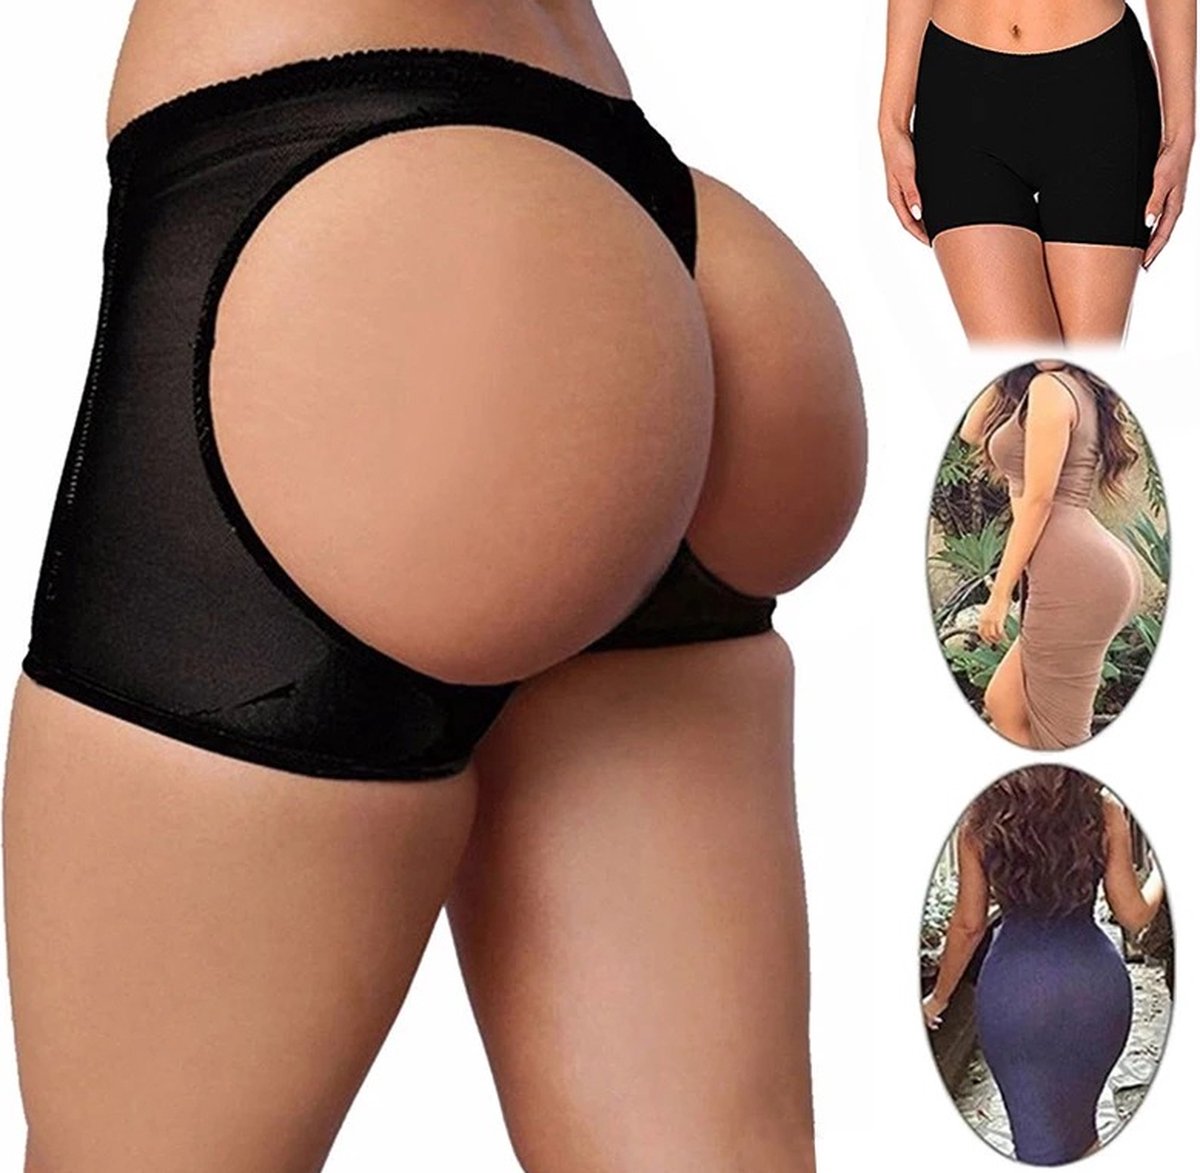 Butt Lifter - Butt lift onderbroek - Shapewear dames - Volle billen - Zwart - M